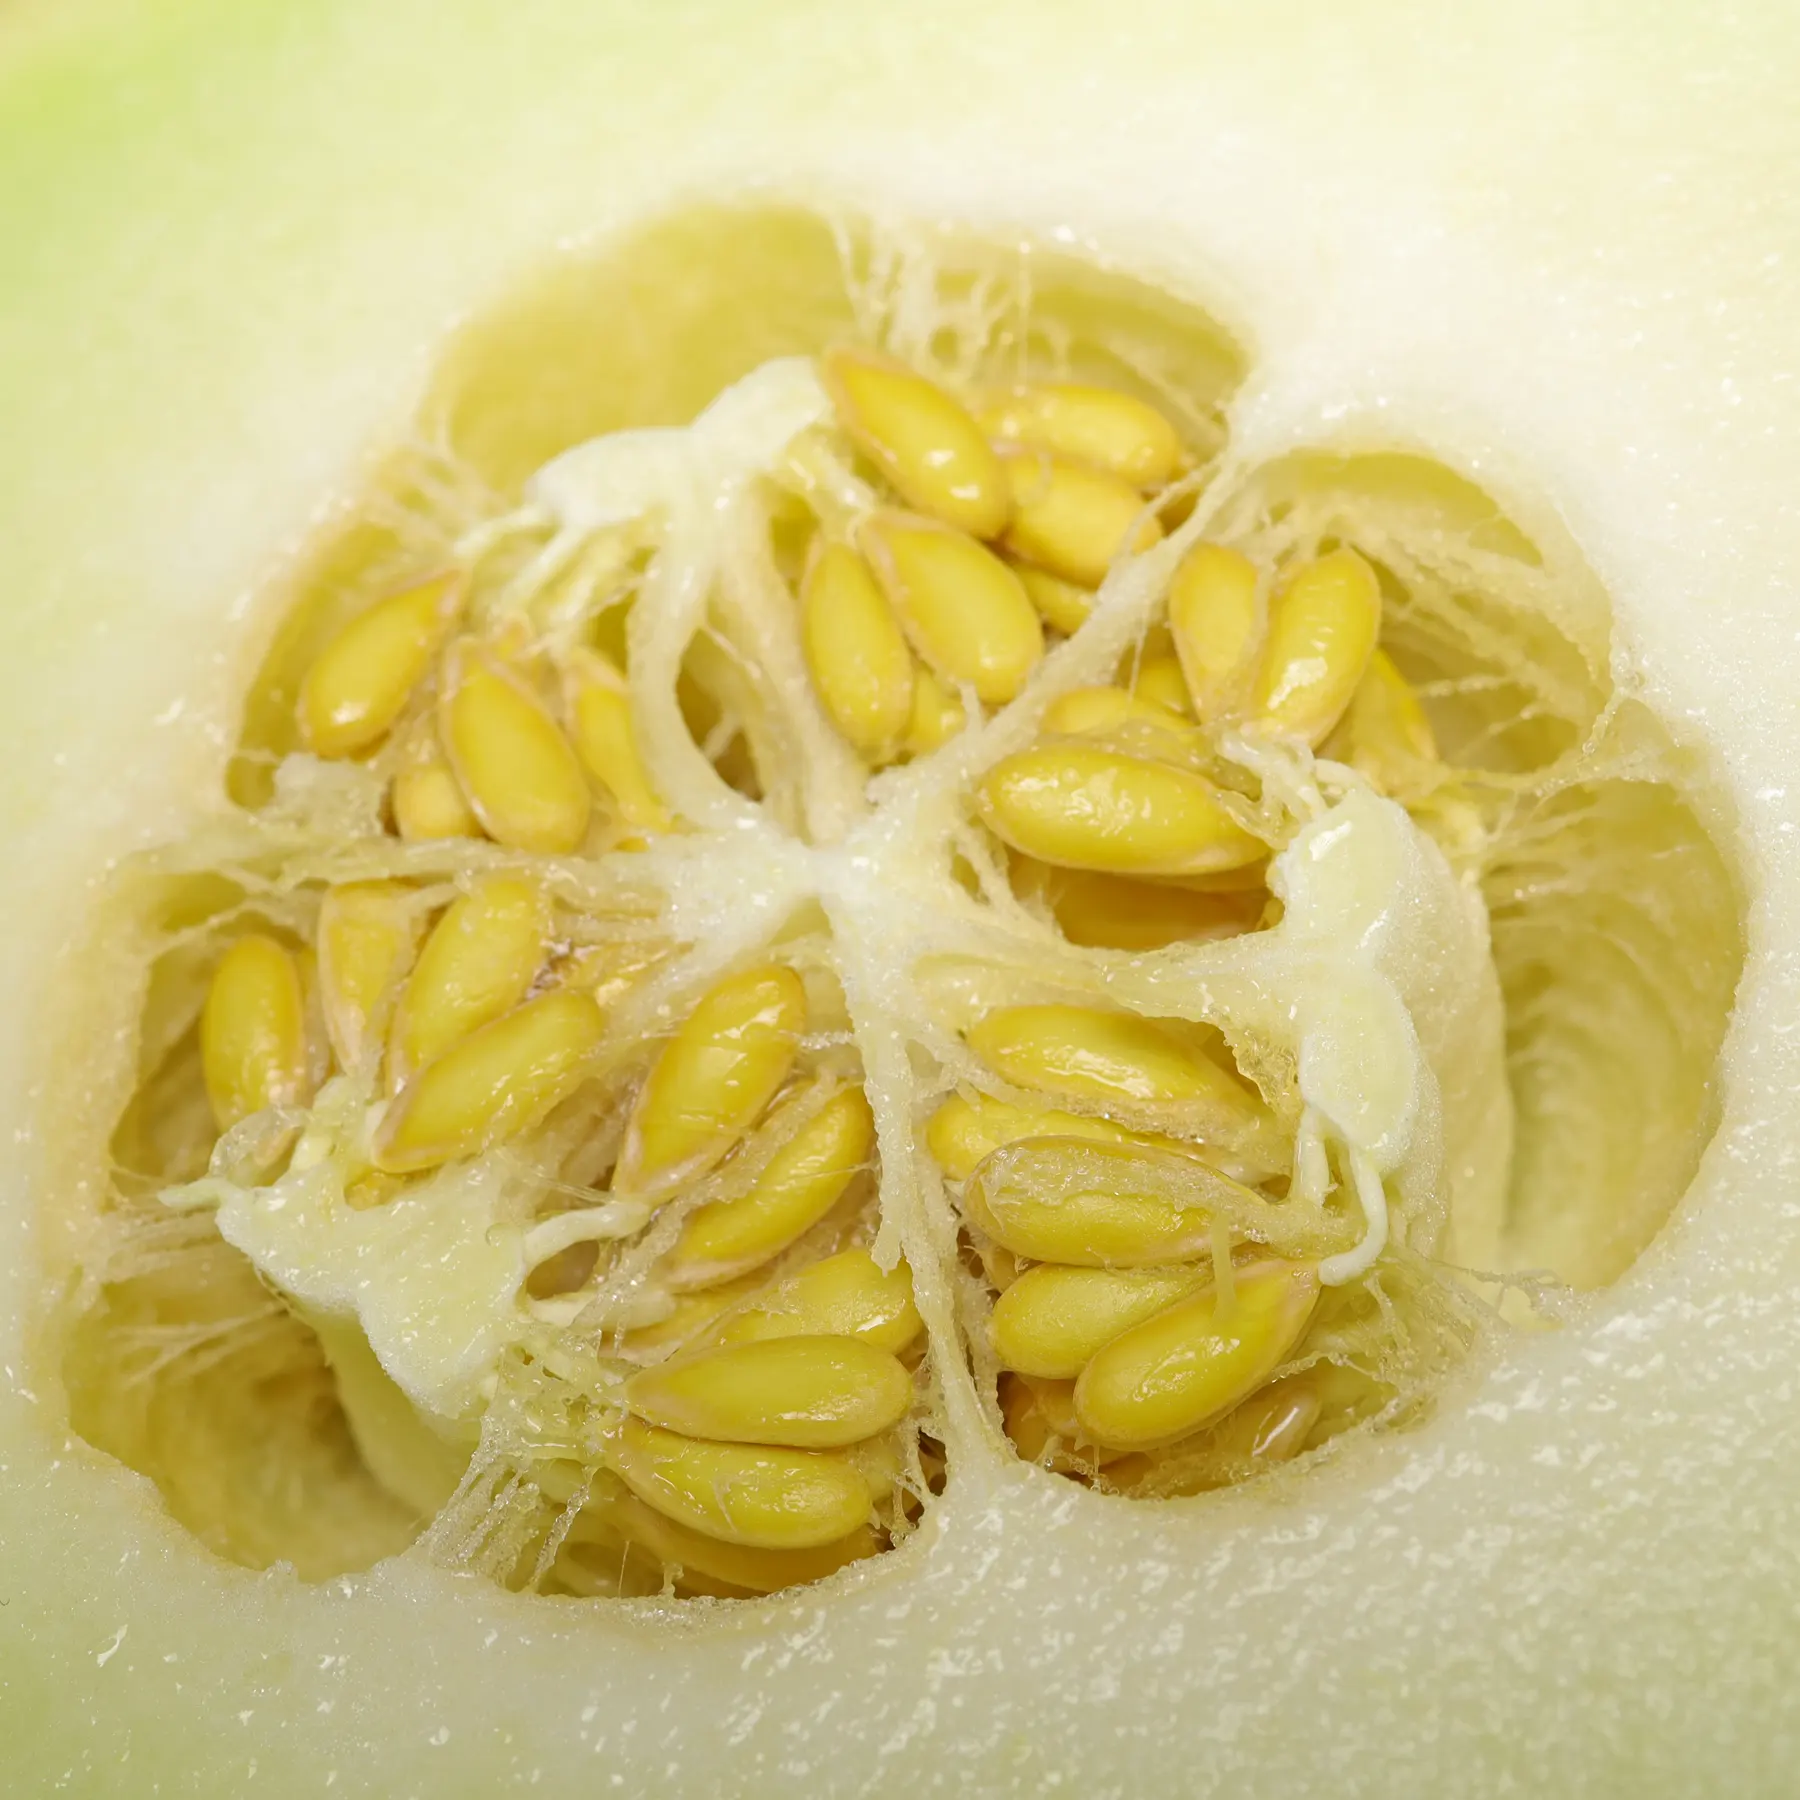 Galia Melon seeds